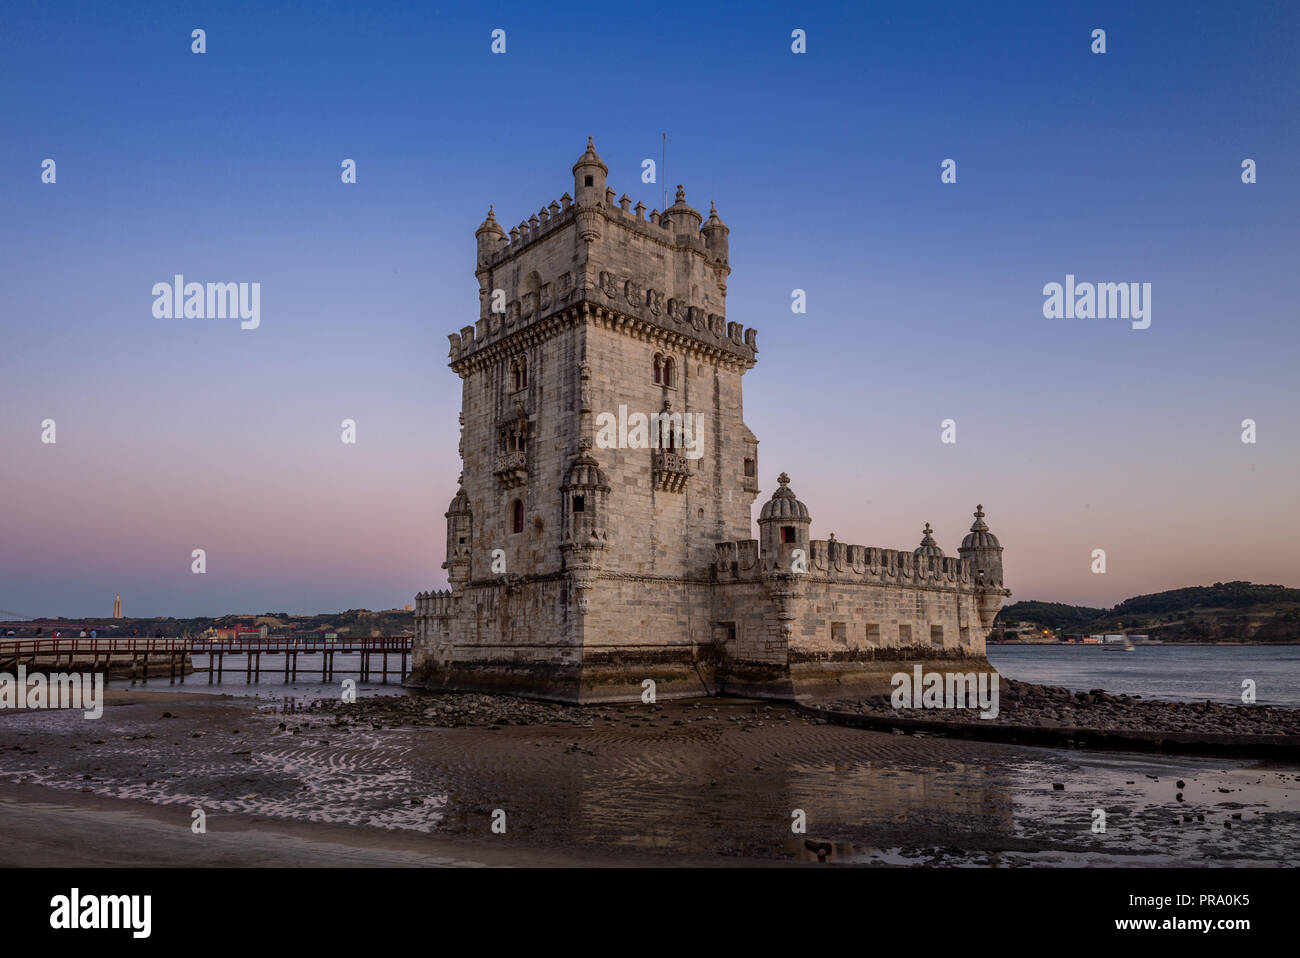 belem tower in belem district of lisbon at dusk Stock Photo